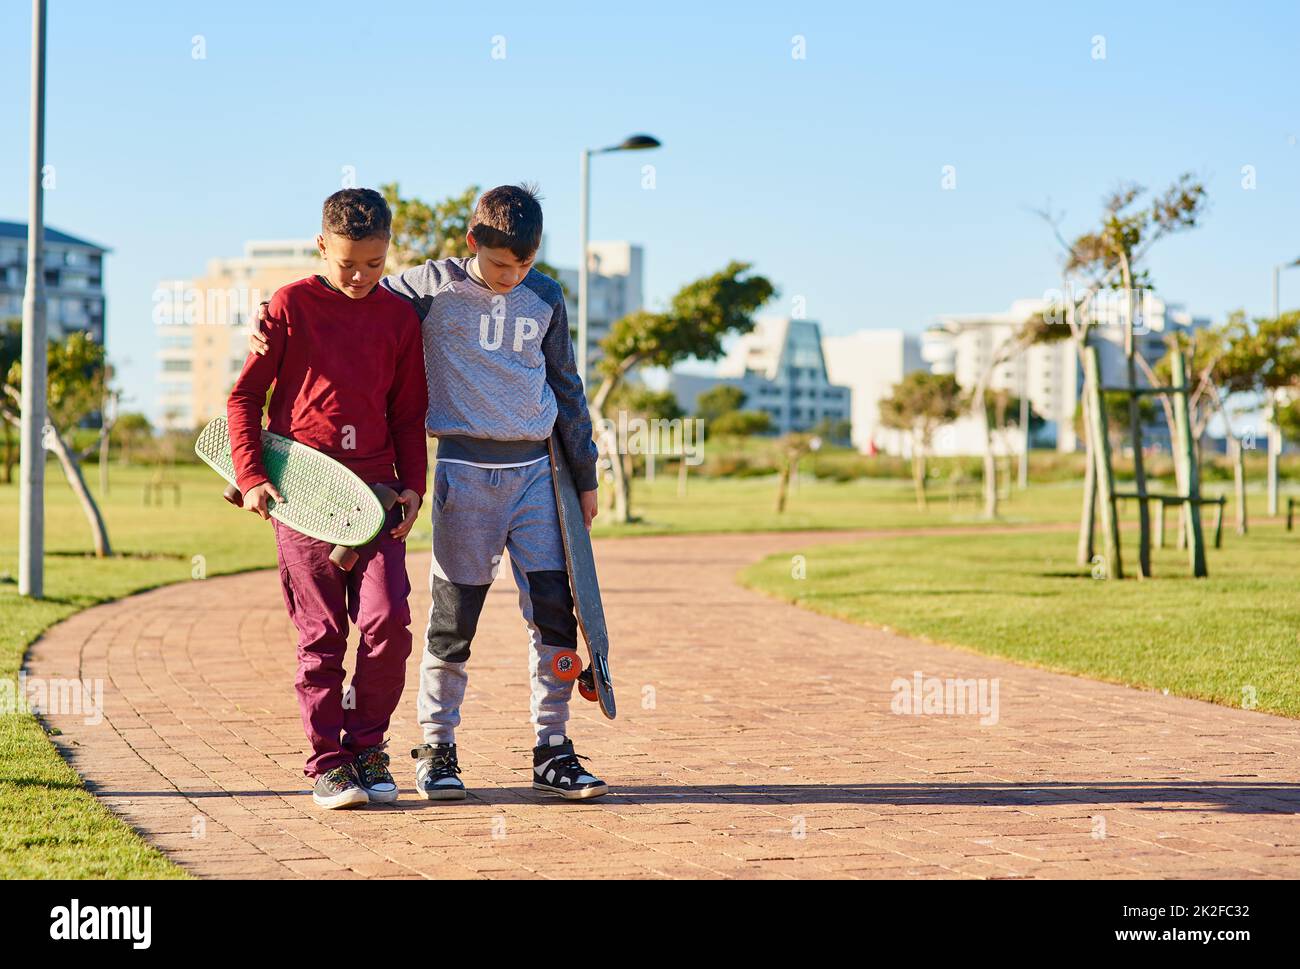 Sie teilen ein gemeinsames Hobby. Aufnahme von zwei jungen Brüdern, die mit ihren Skateboards im Park spazieren gehen. Stockfoto